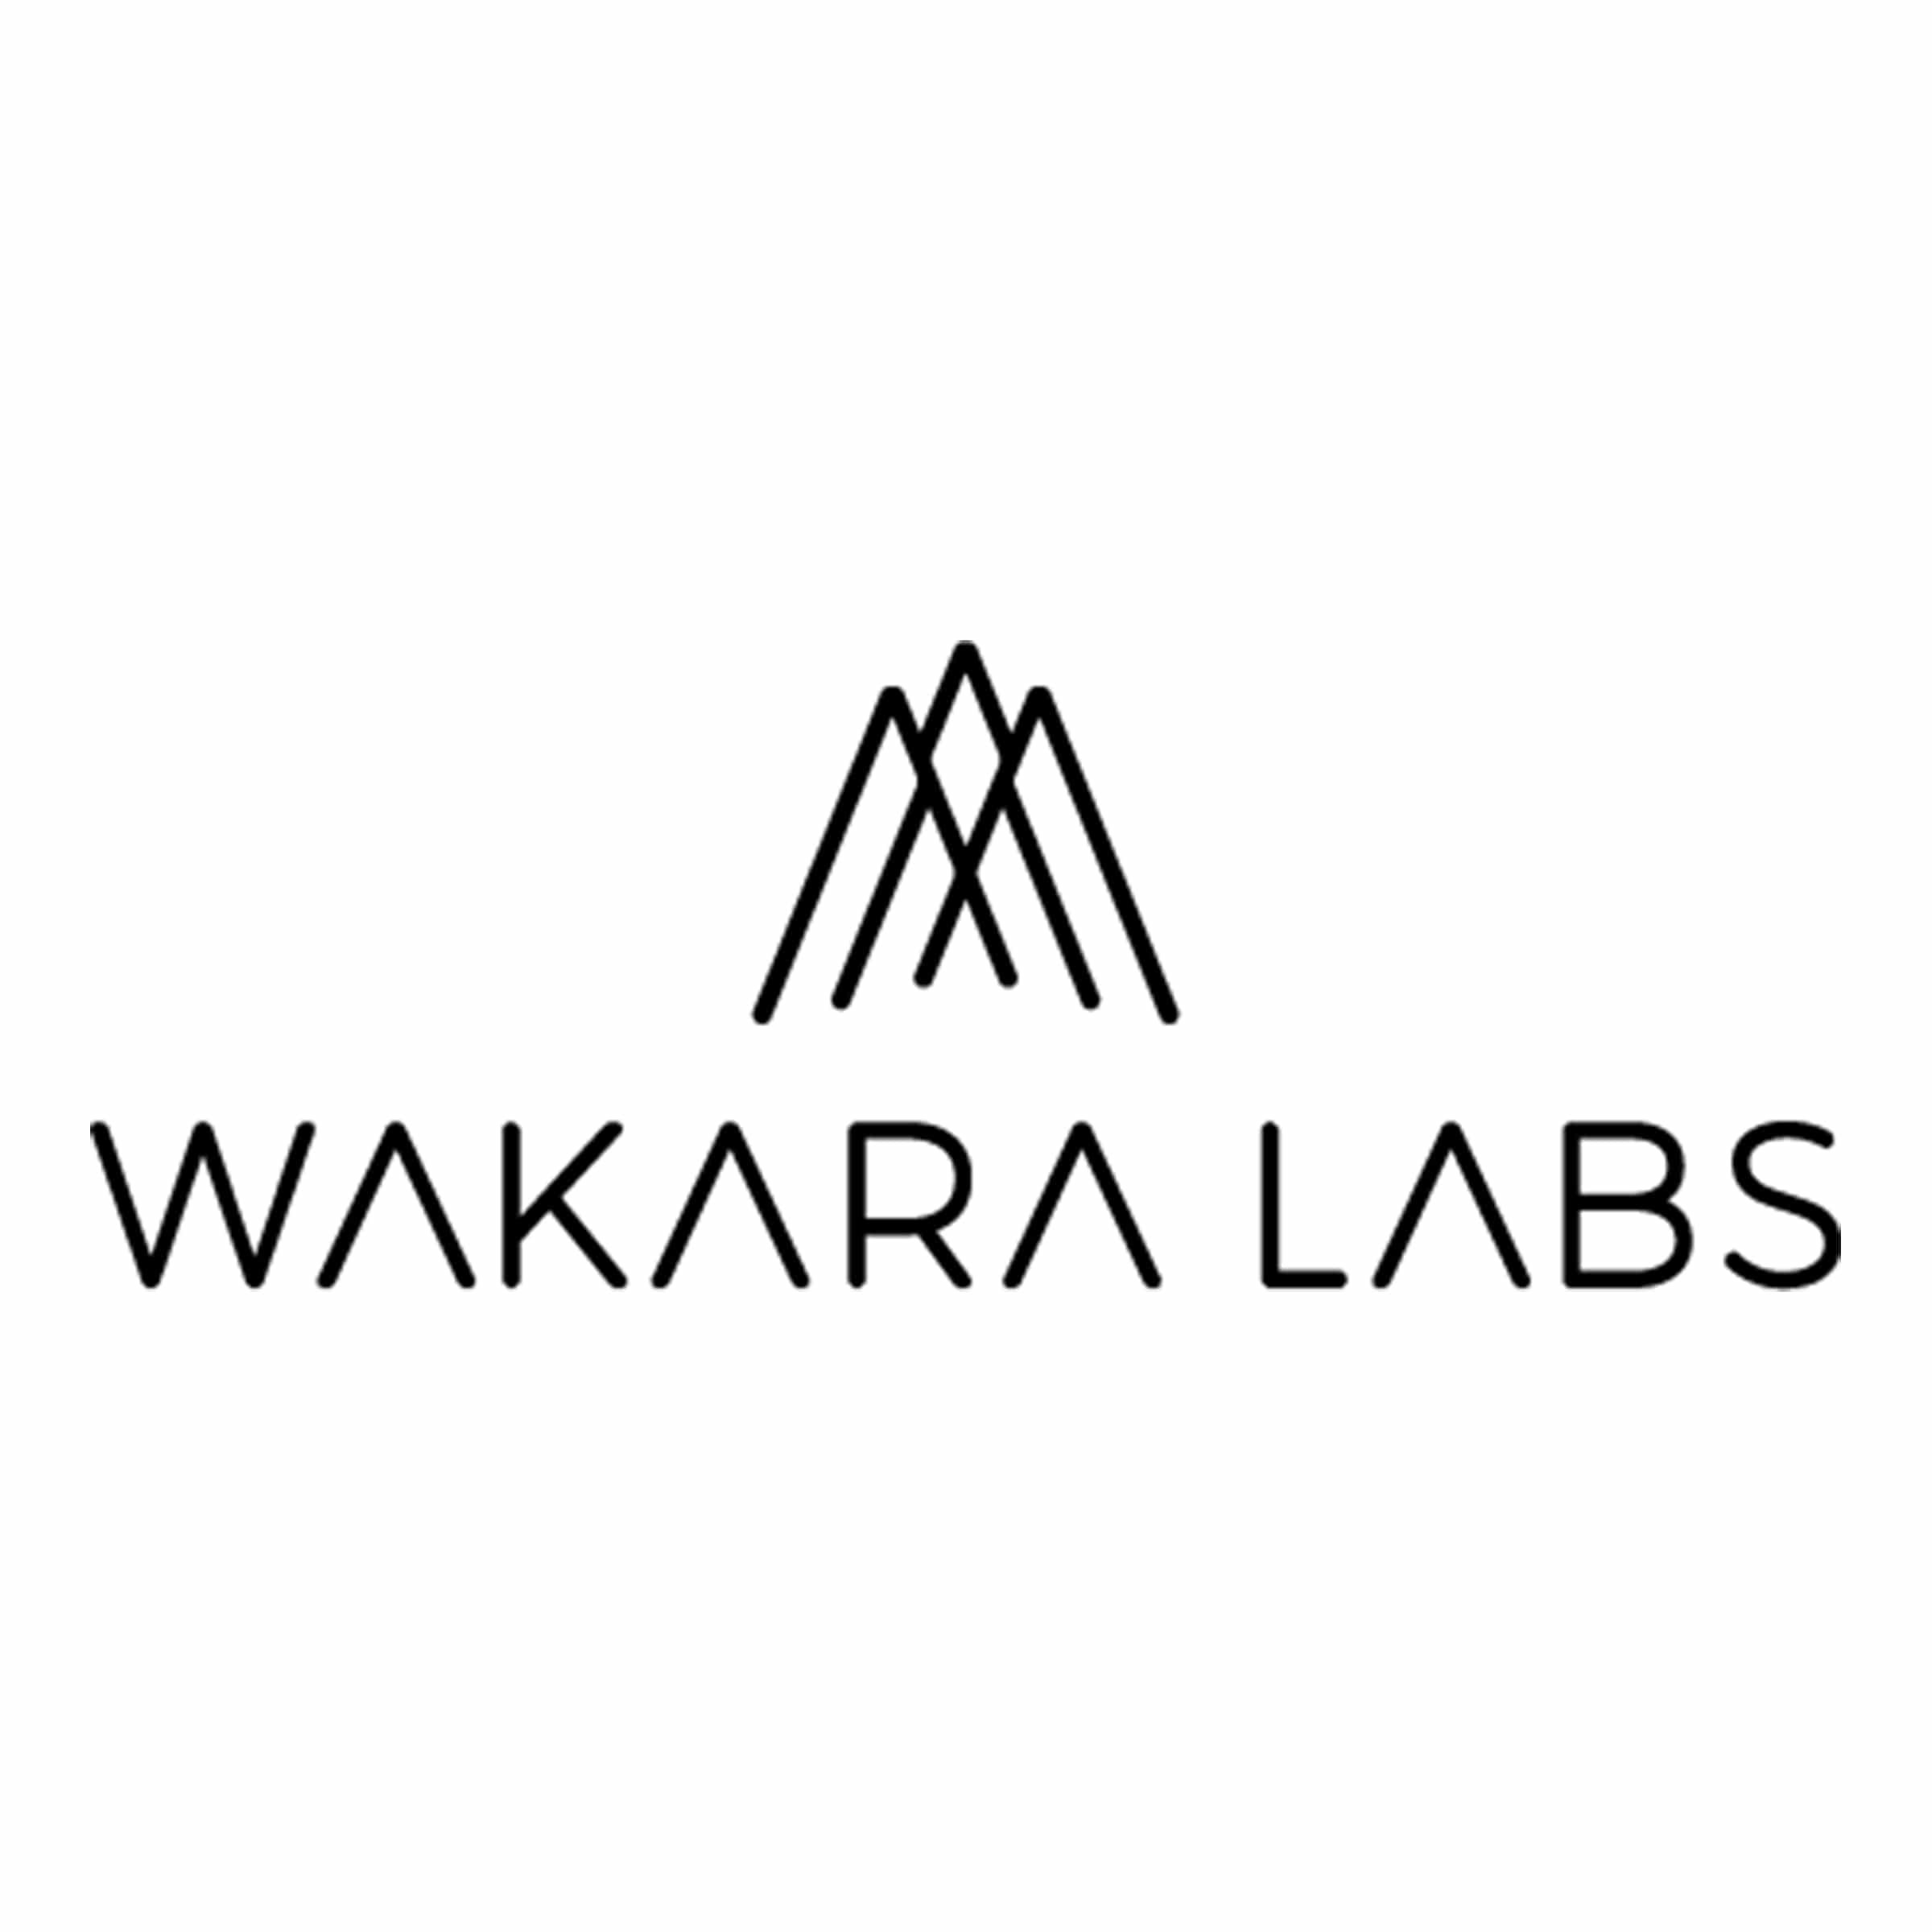 Wakara Labs